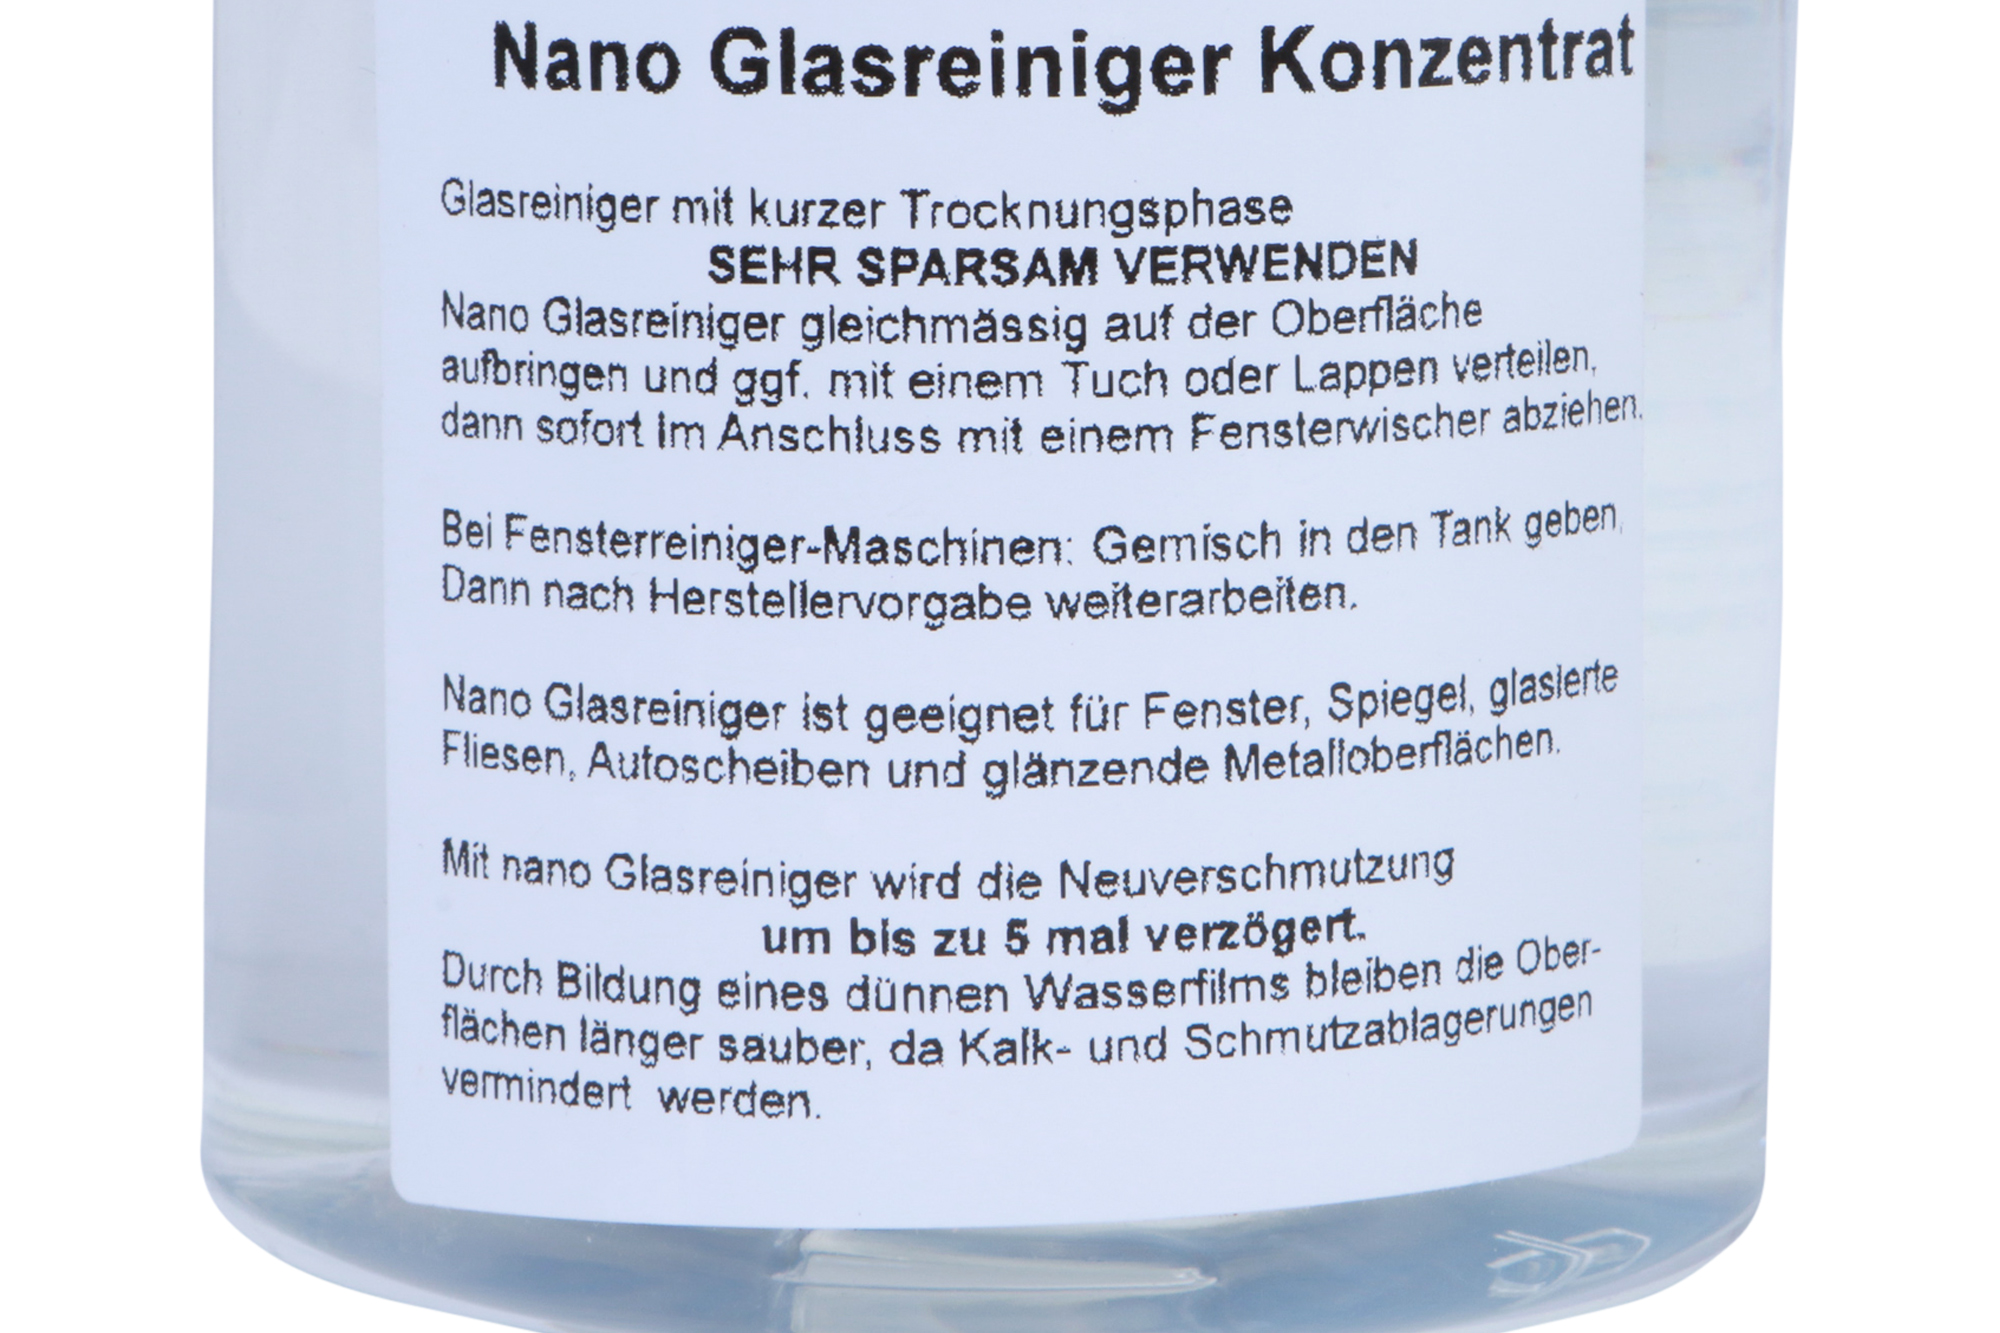 STAUBSAUGERLADEN.DE Nano Glasreiniger Konzentrat Reinigungsmittel Vorwerk VG100 500ml - Fensterreiniger für